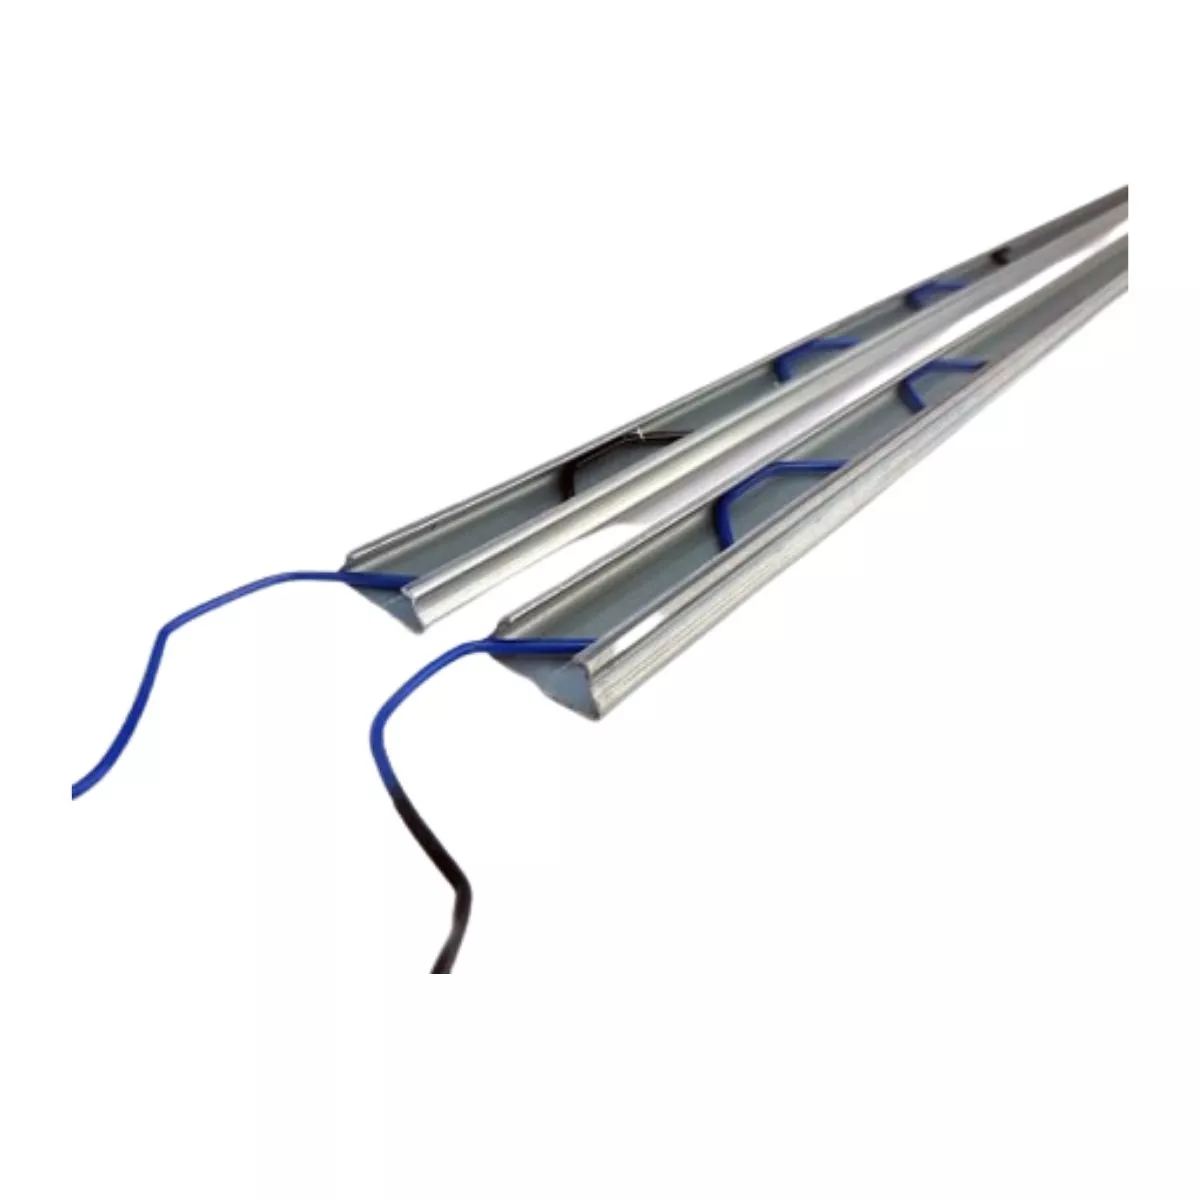 Bagheta metalica pentru prinderea foliei de solar, 2,4 metri, cu sarma plastifiata, set 10+12 (24 ML) 1